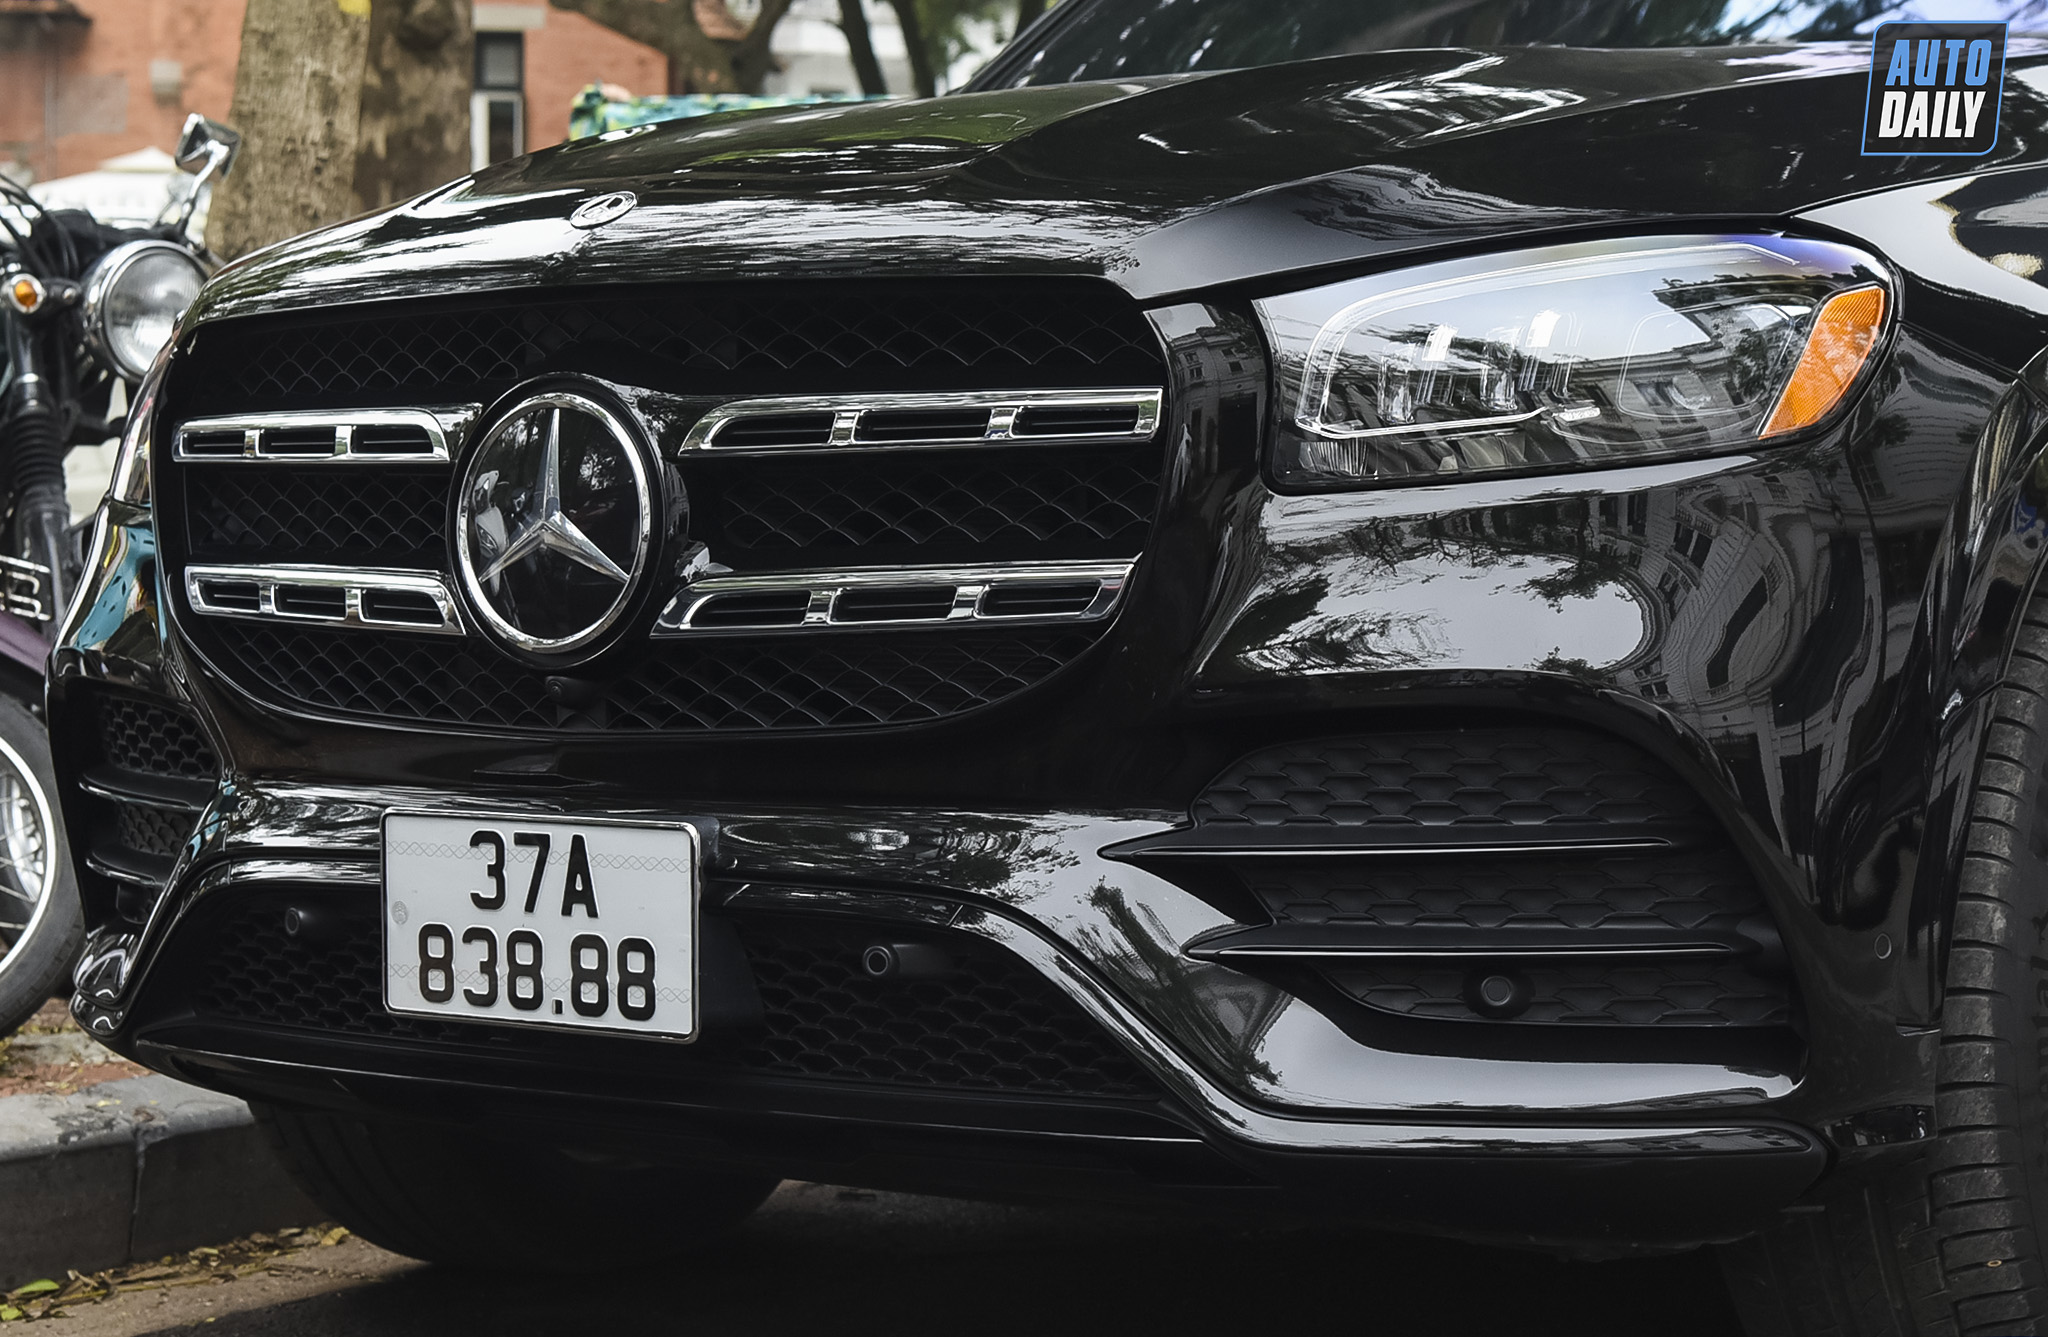 Chạm mặt Mercedes-Benz GLS 580 hơn 9 tỷ của đại gia Nghệ An adt-8965-copy.jpg